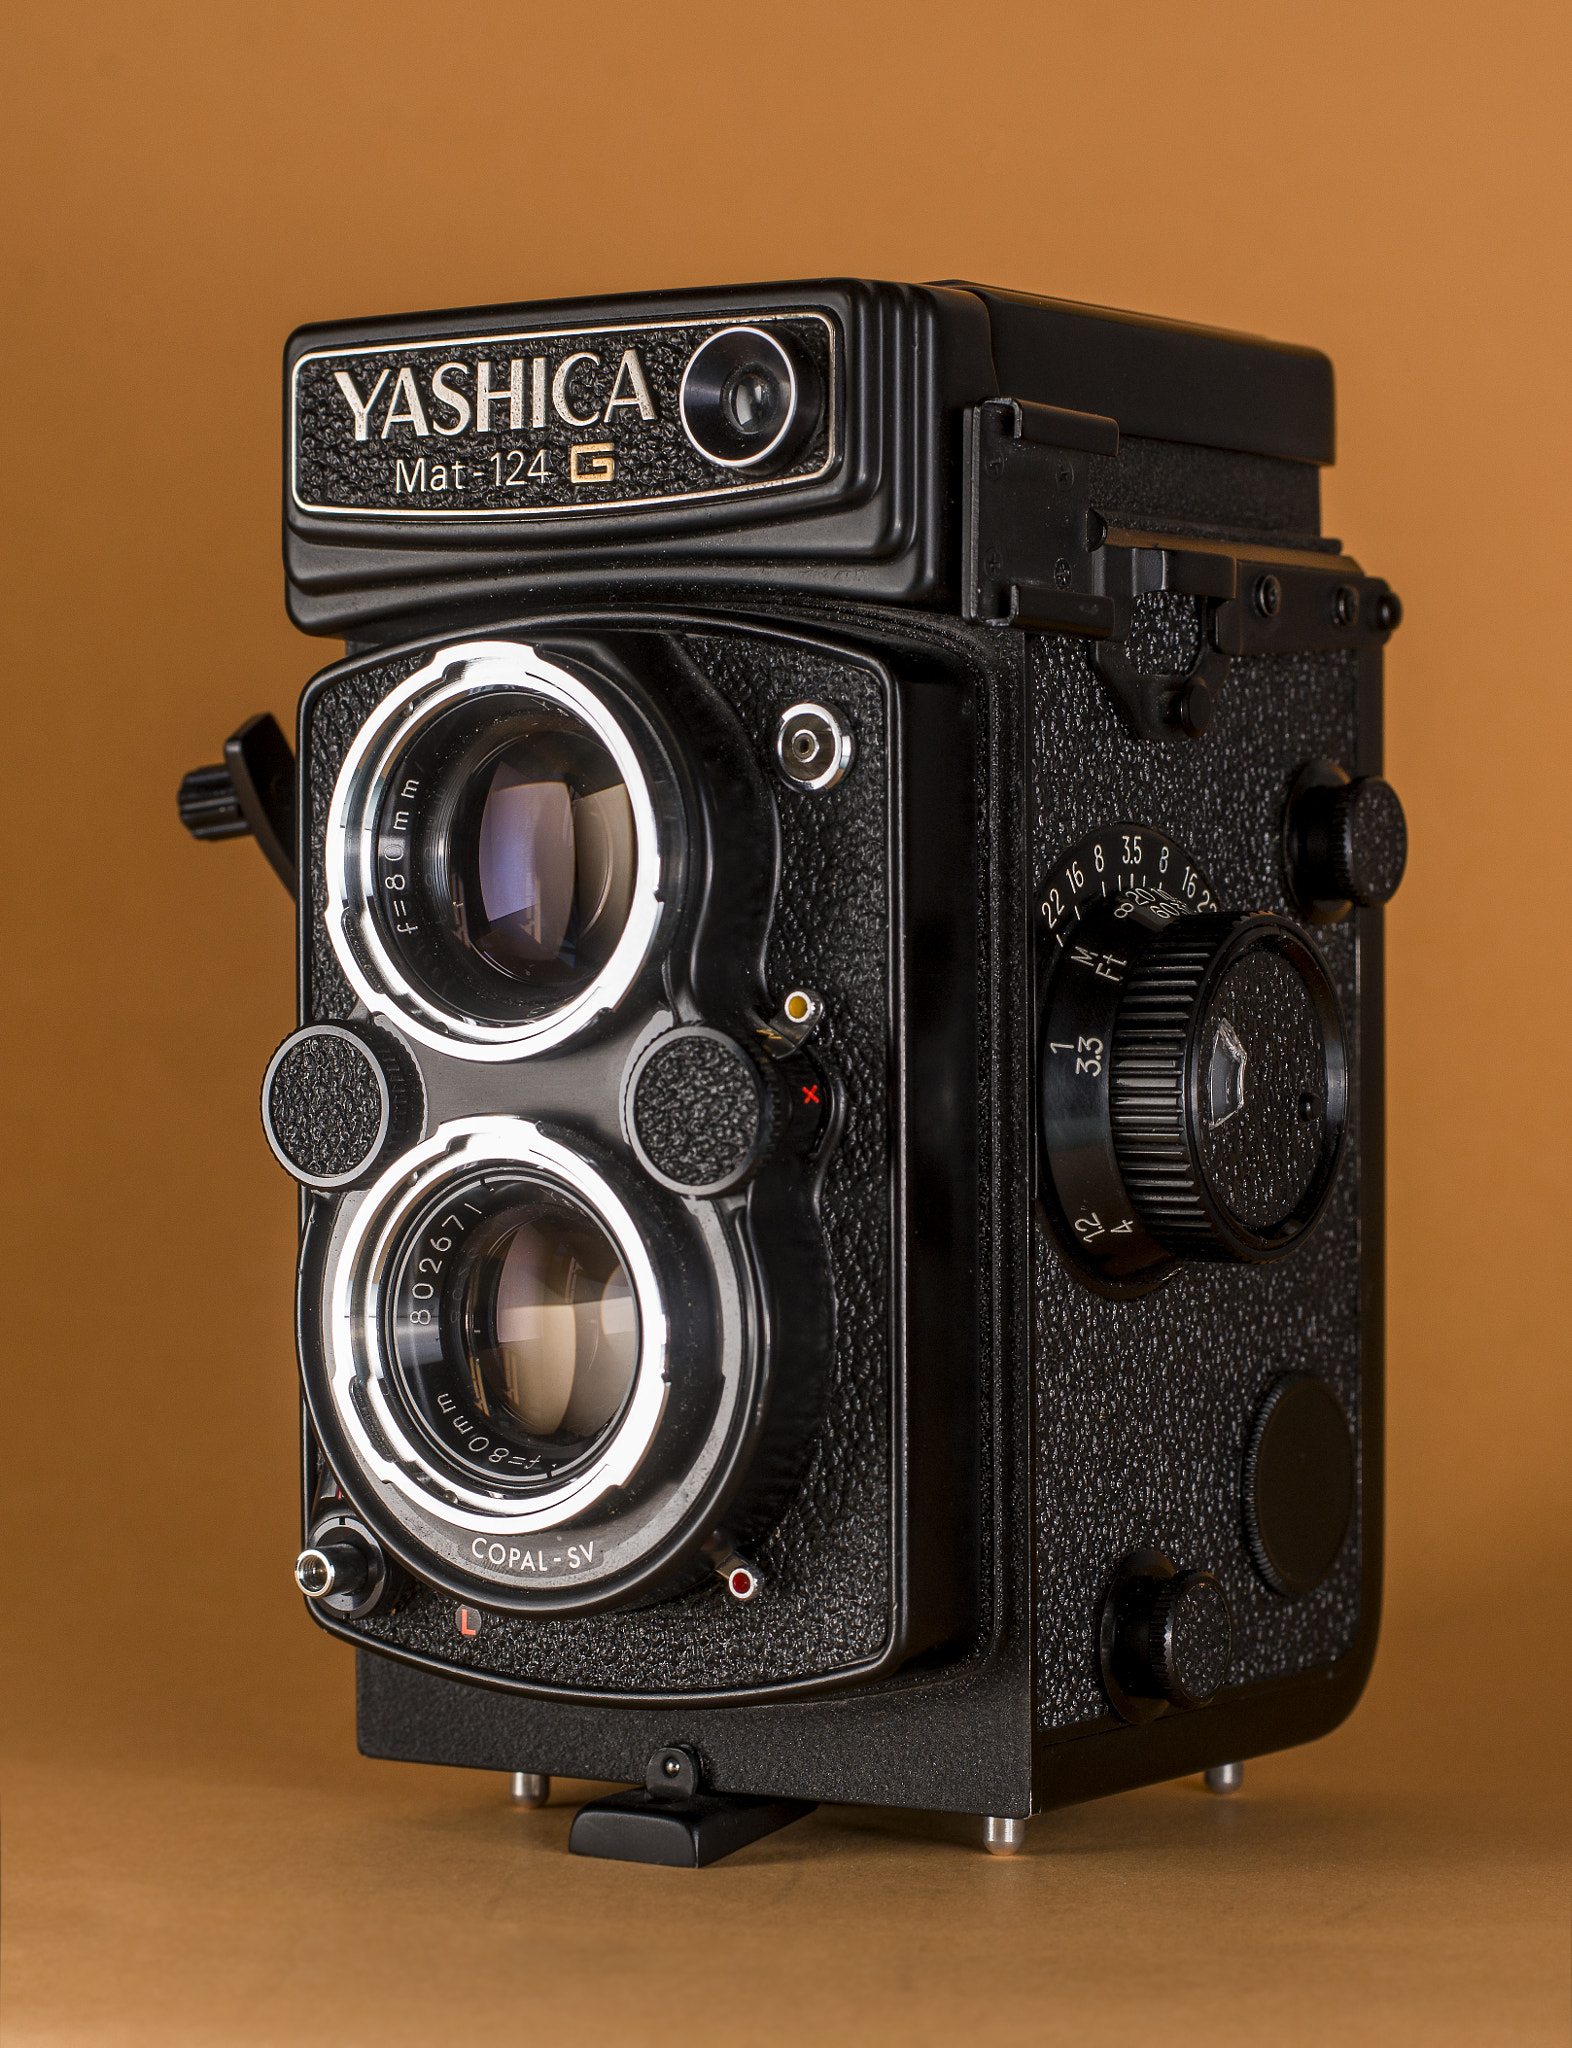 Nikon D800 sample photo. Yashica photography